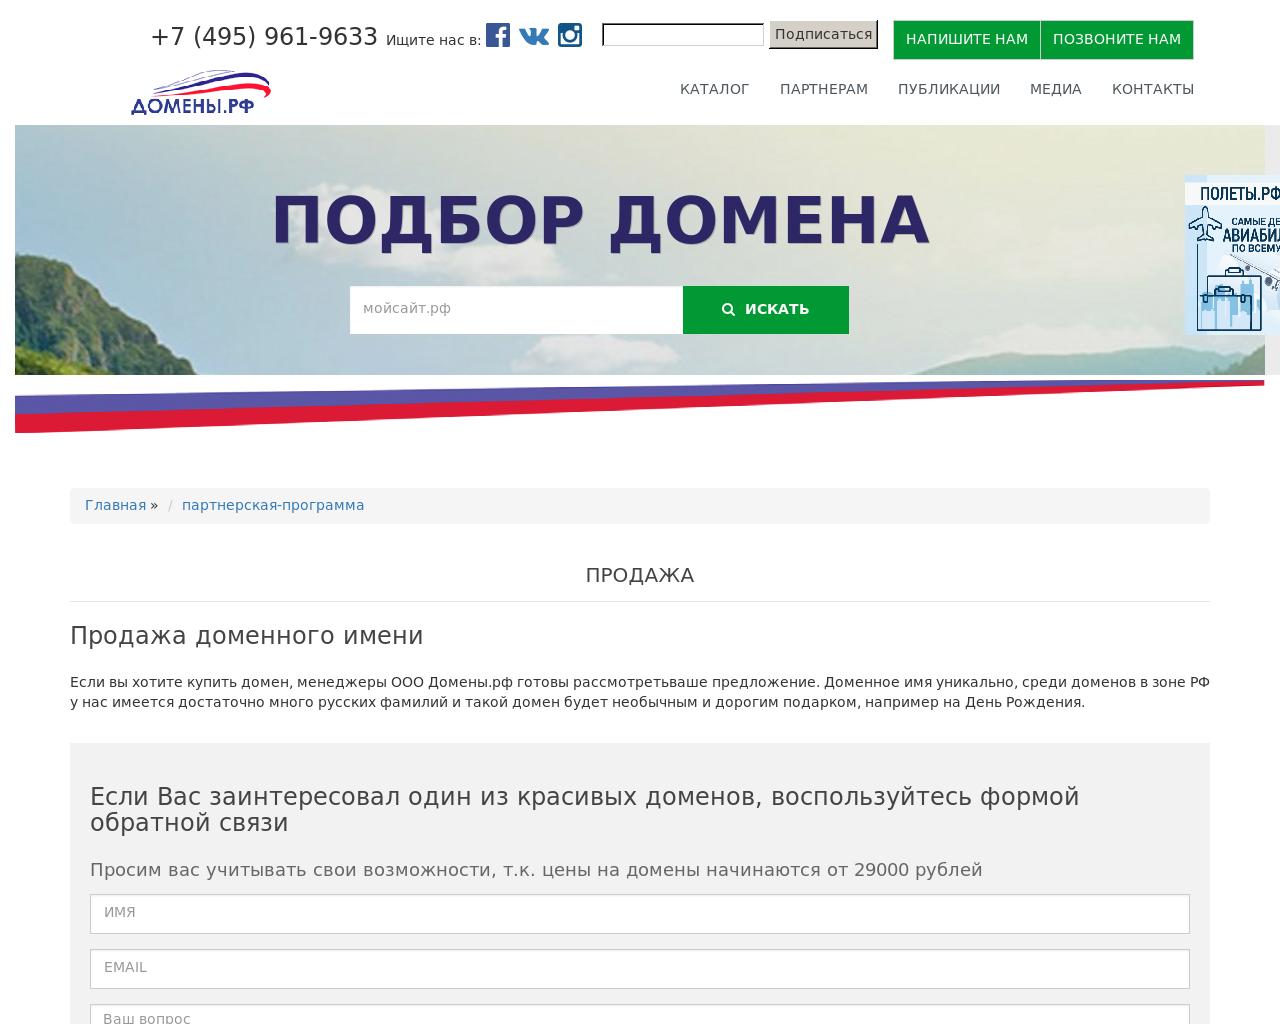 Изображение сайта novst.ru в разрешении 1280x1024